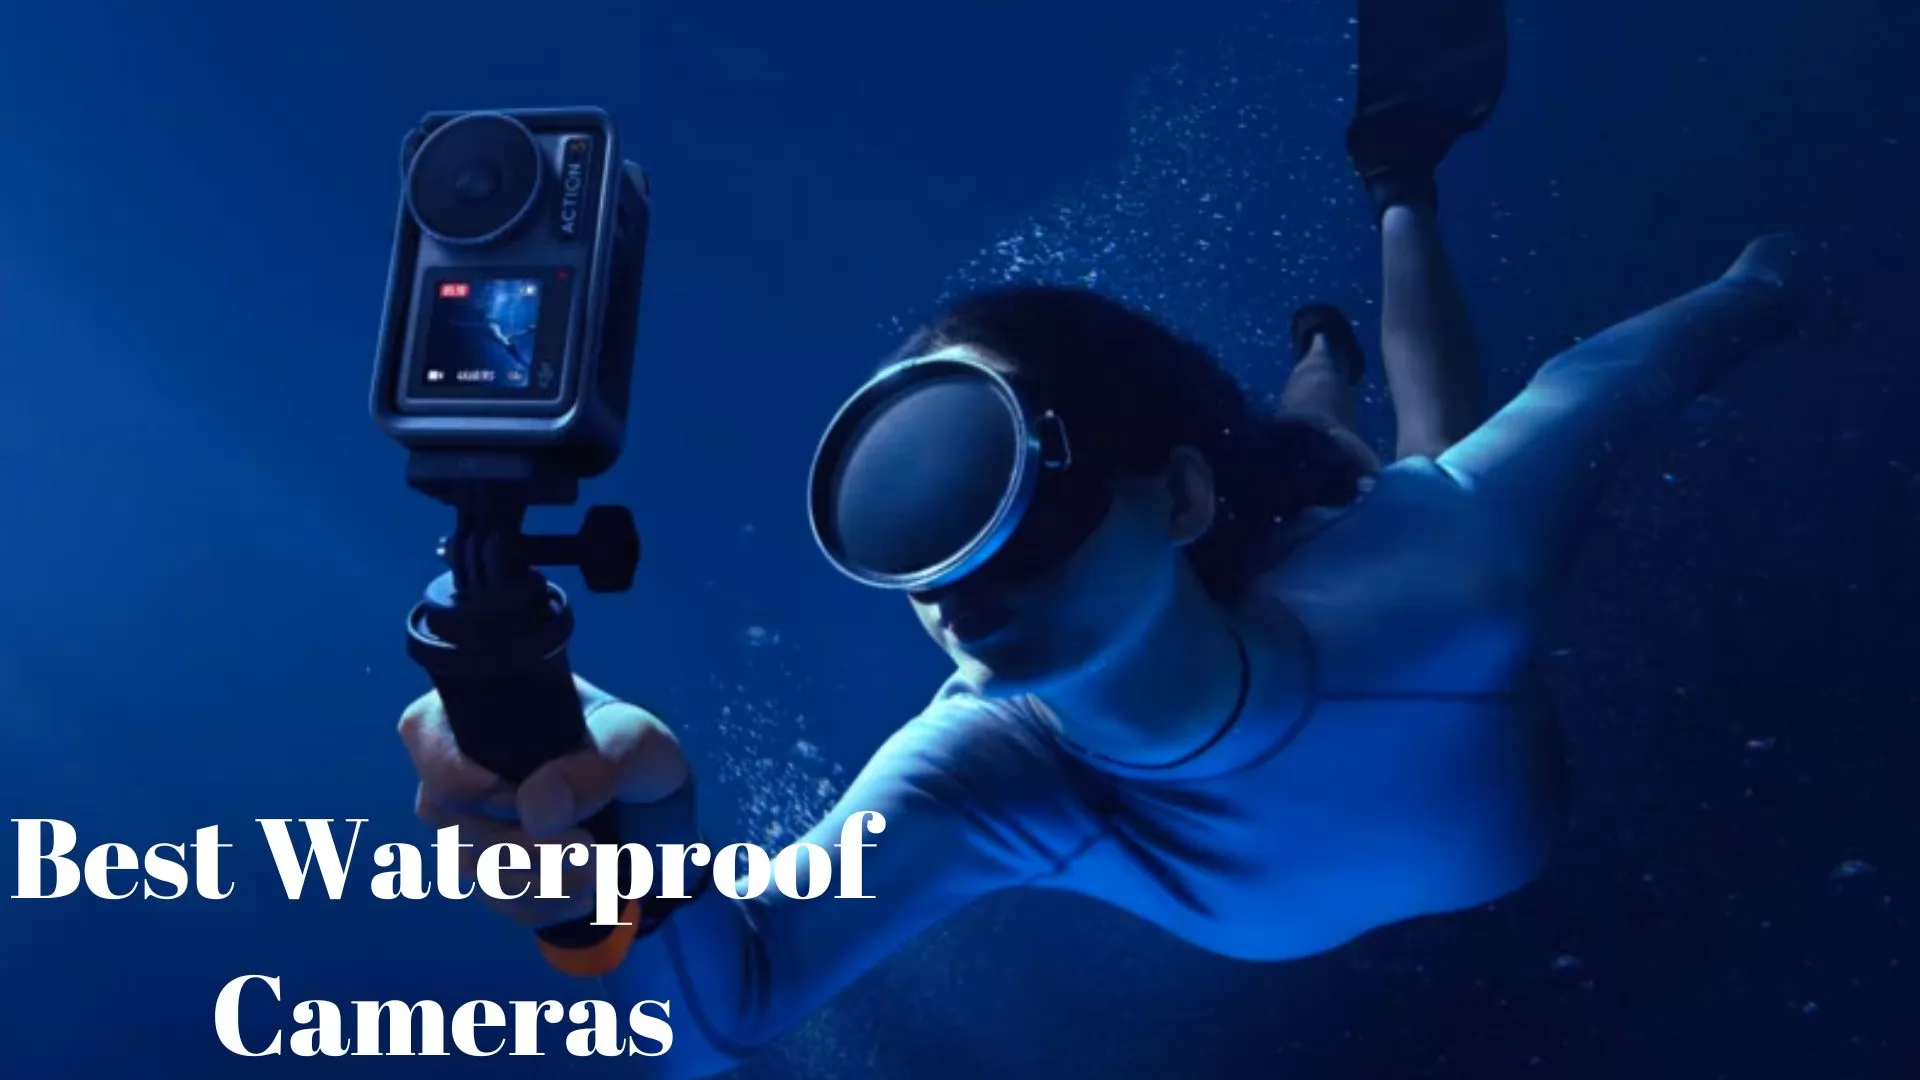 waterproof cameras